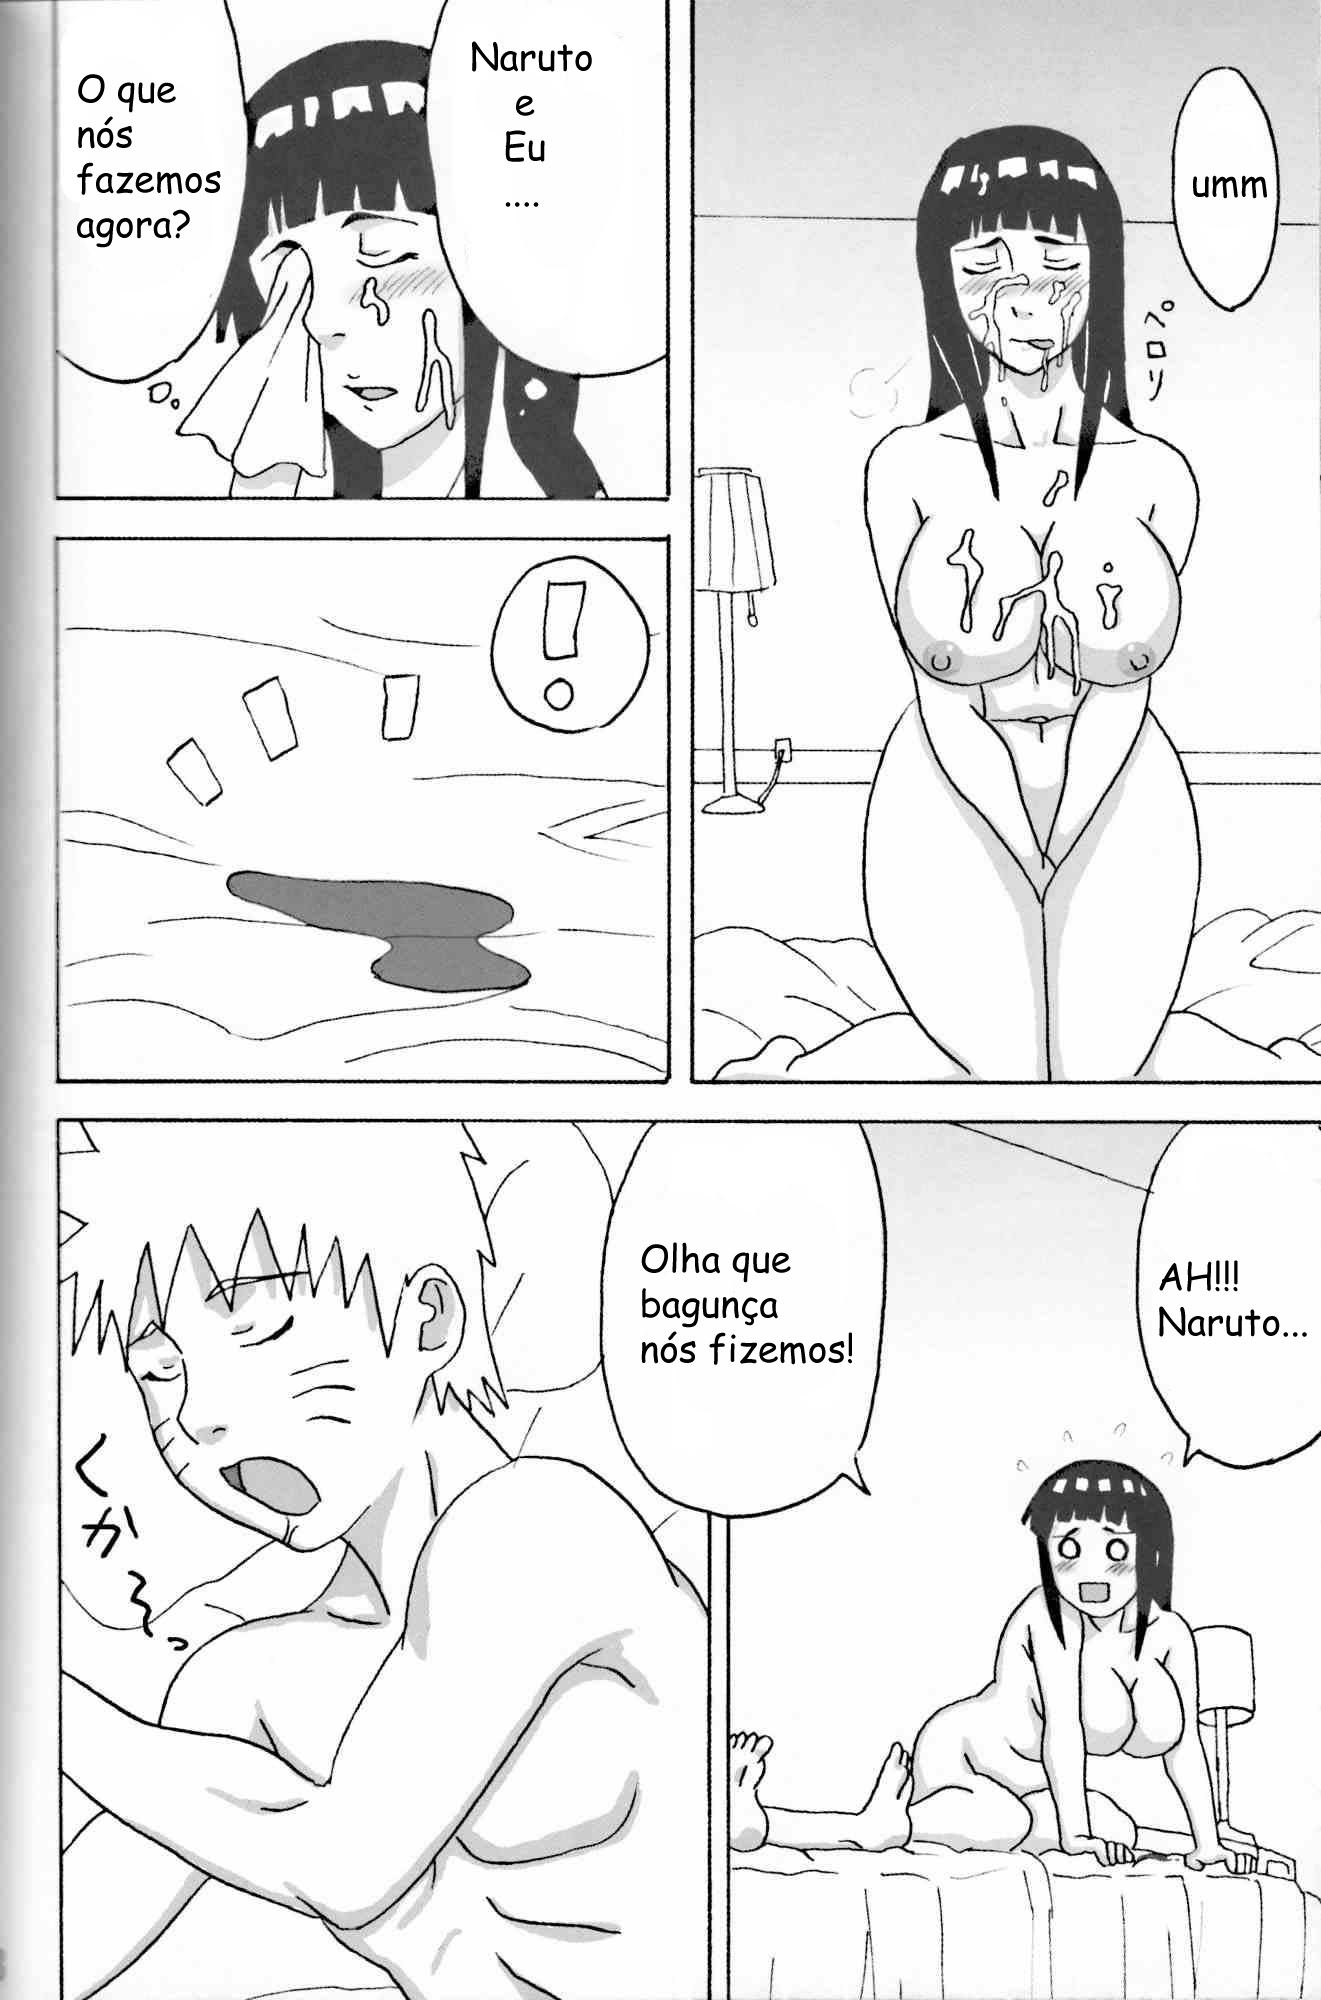 Hinata quer fazer sexo